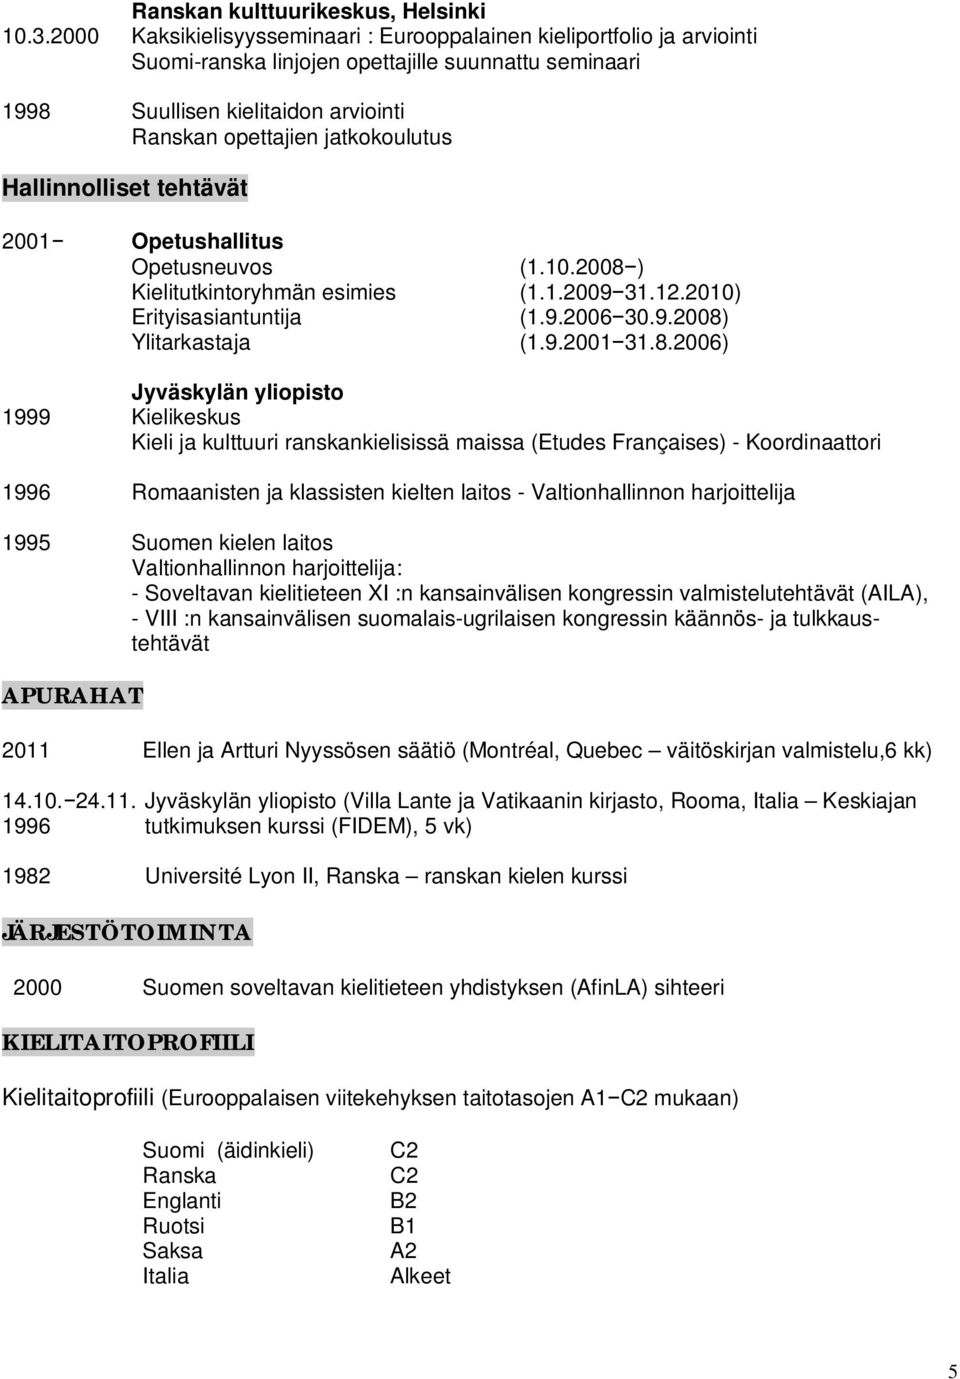 Hallinnolliset tehtävät Opetusneuvos Kielitutkintoryhmän esimies Erityisasiantuntija Ylitarkastaja (1.10.2008 